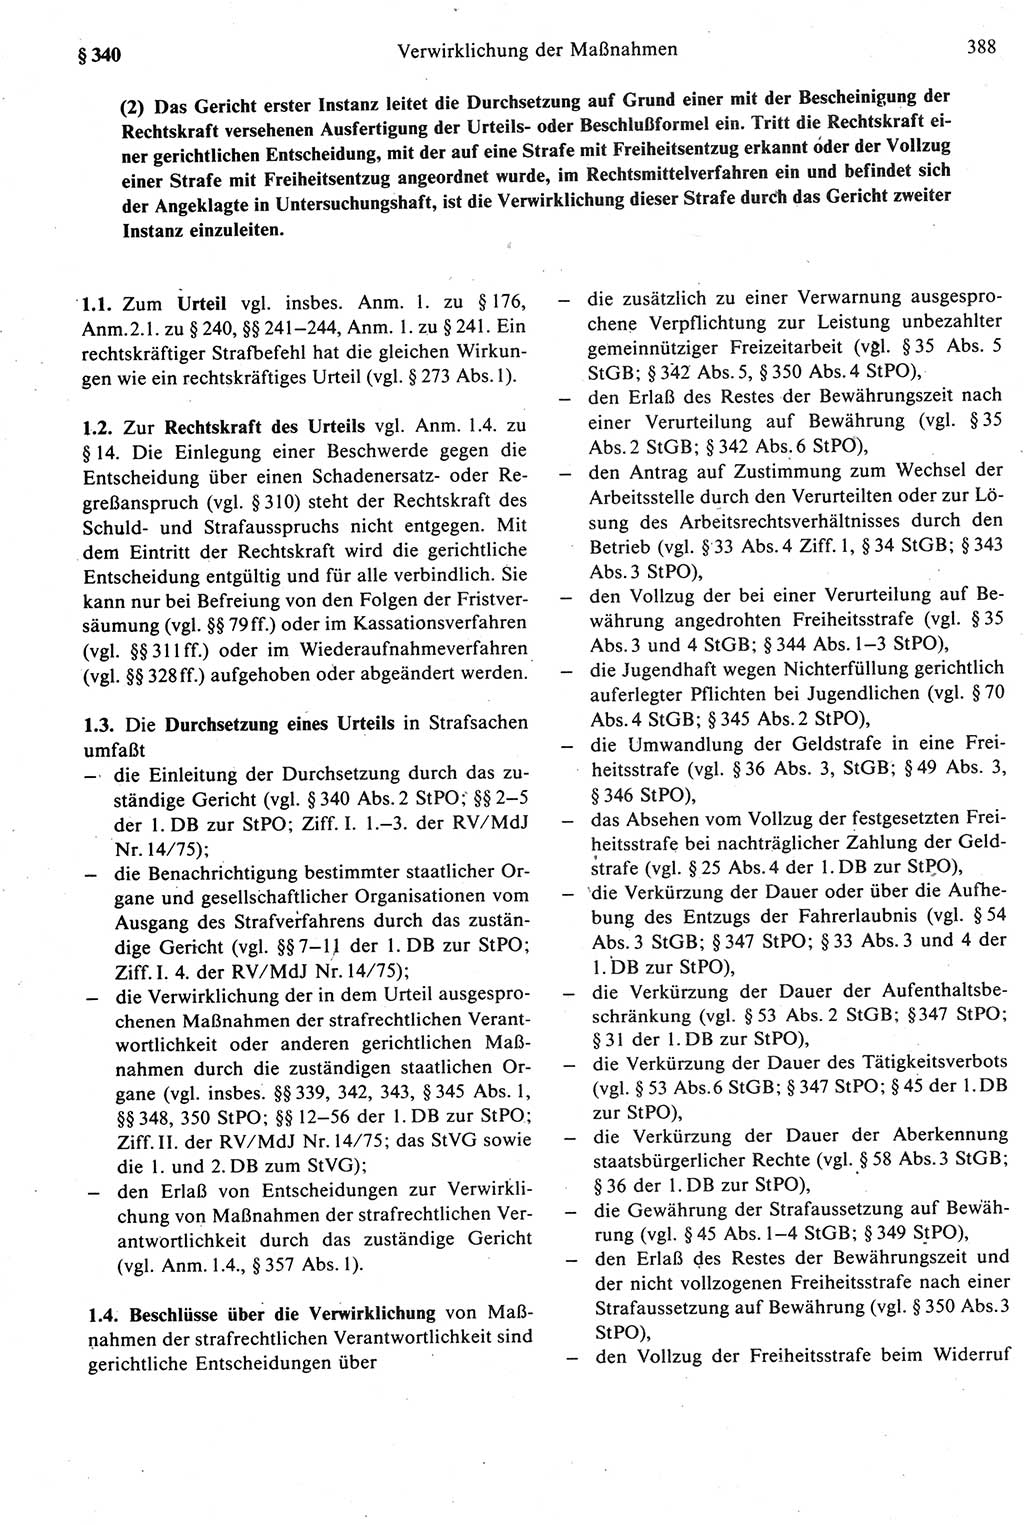 Strafprozeßrecht der DDR [Deutsche Demokratische Republik], Kommentar zur Strafprozeßordnung (StPO) 1987, Seite 388 (Strafprozeßr. DDR Komm. StPO 1987, S. 388)